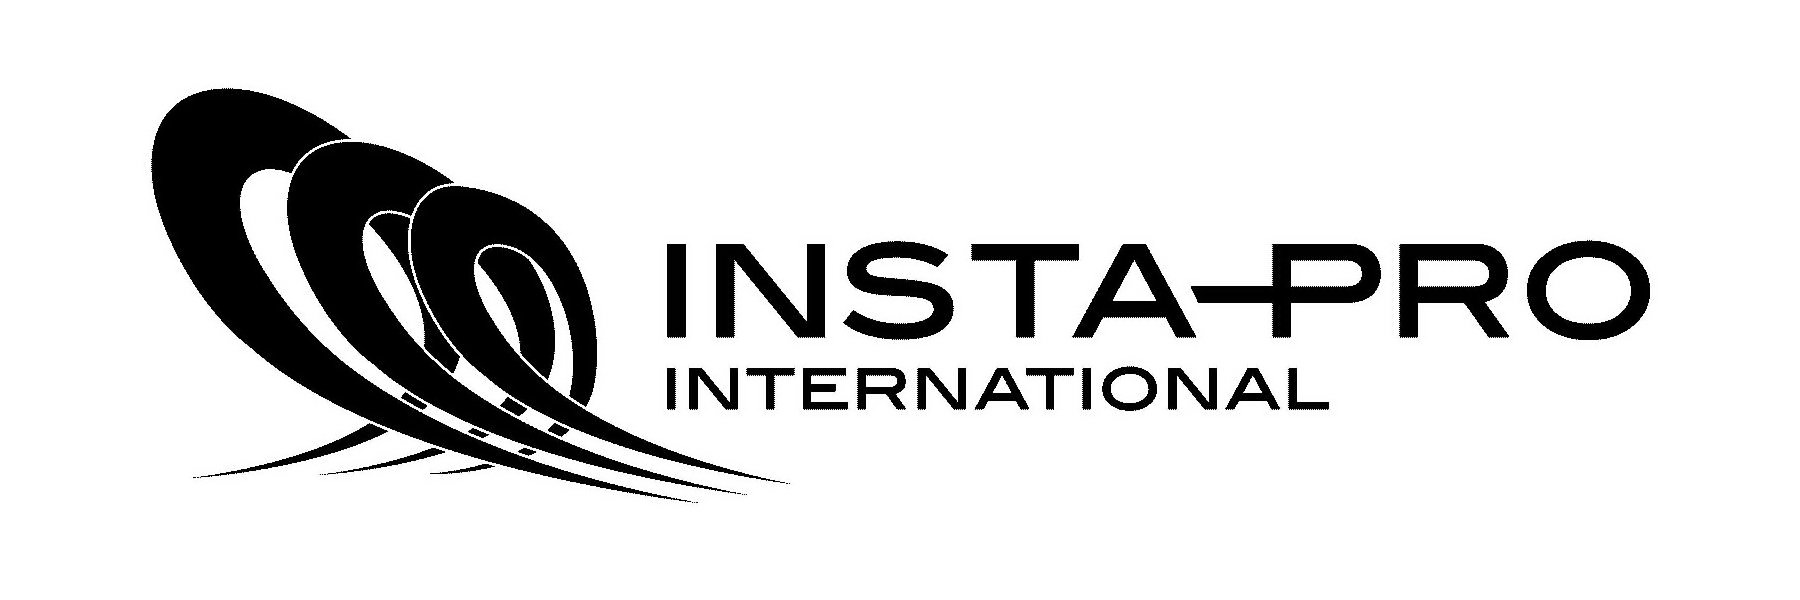  INSTA-PRO INTERNATIONAL